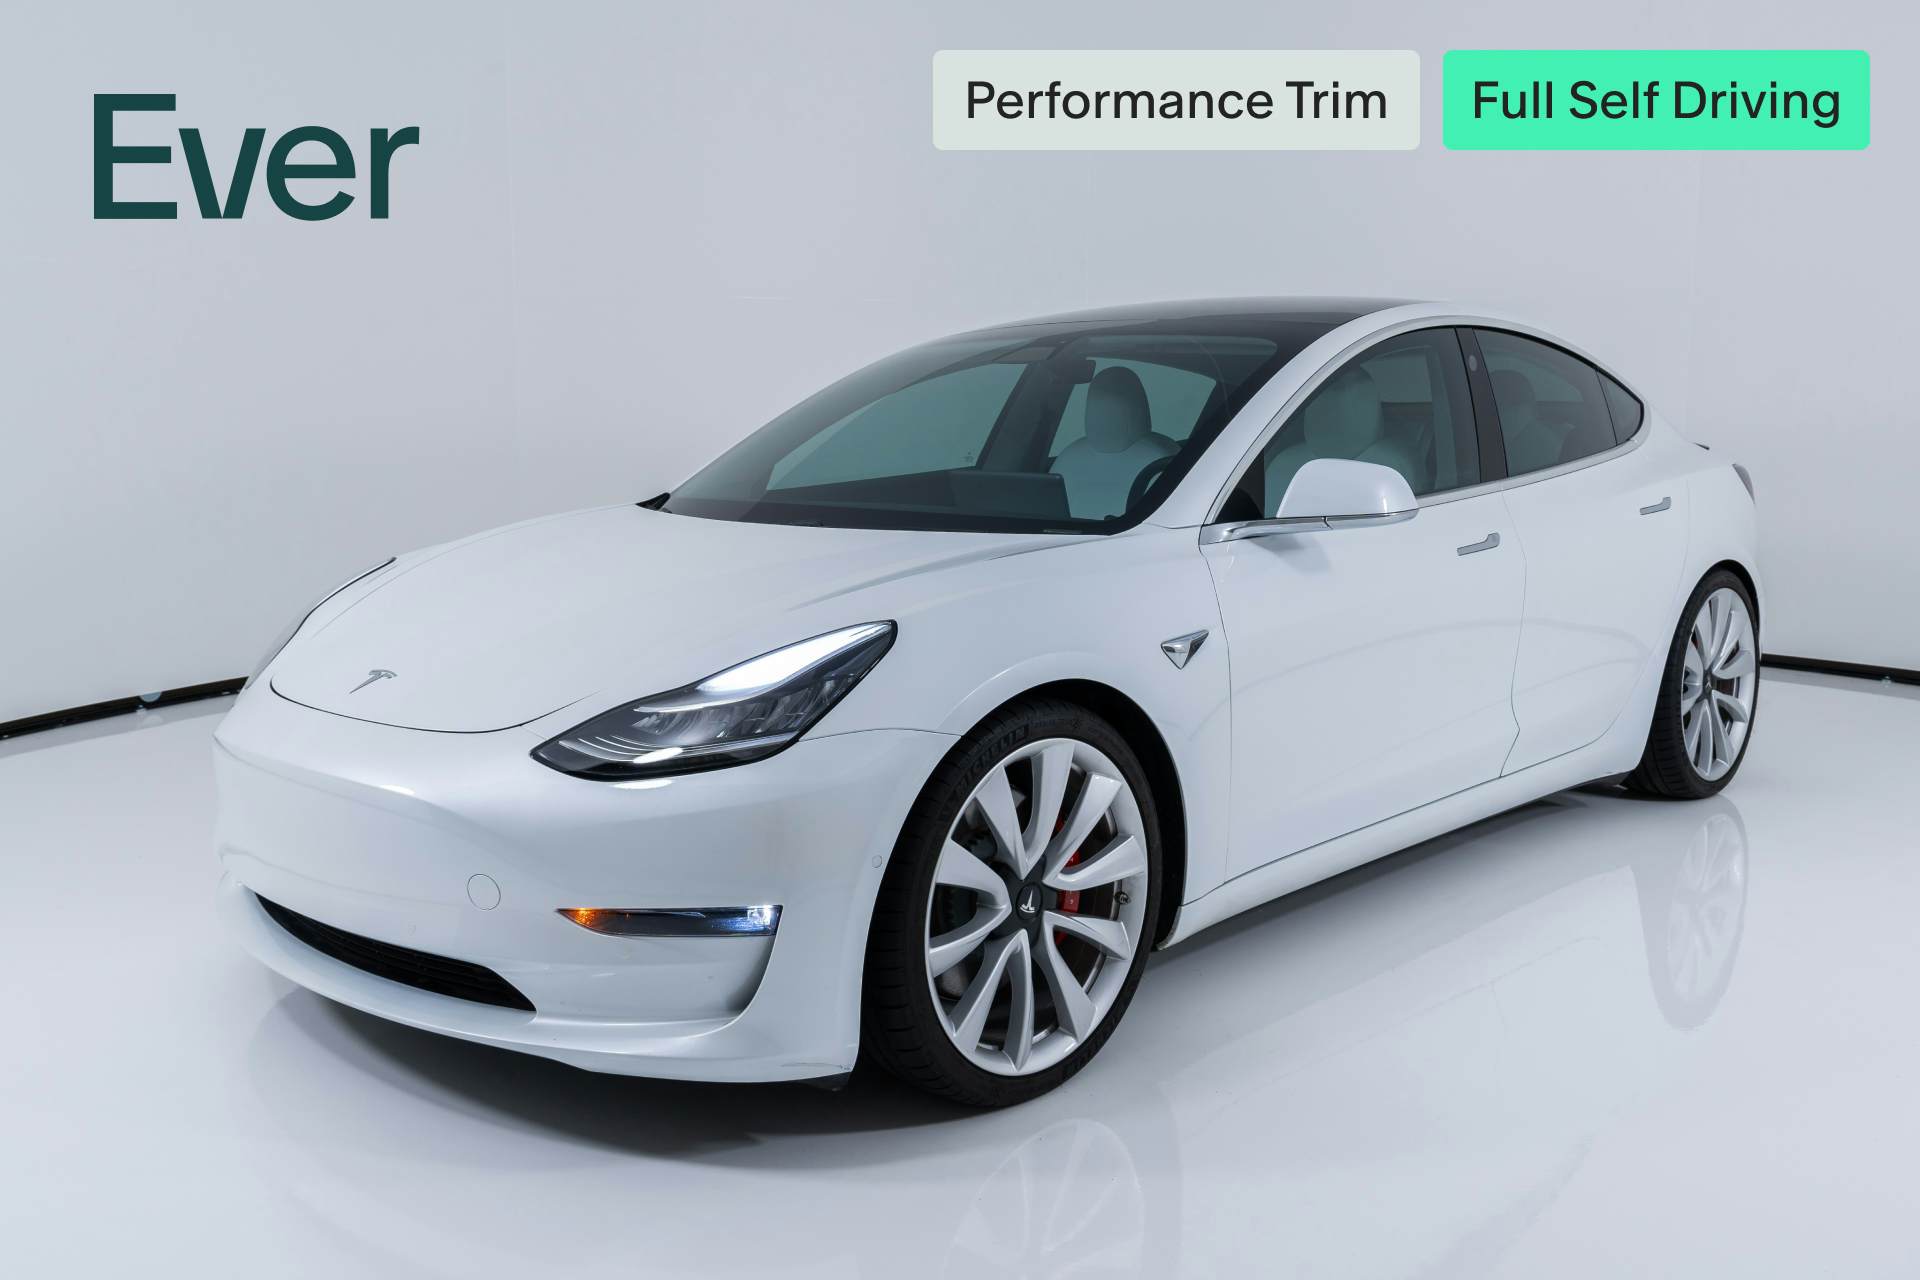 Ever Tesla Model 3 - 2019 Performance